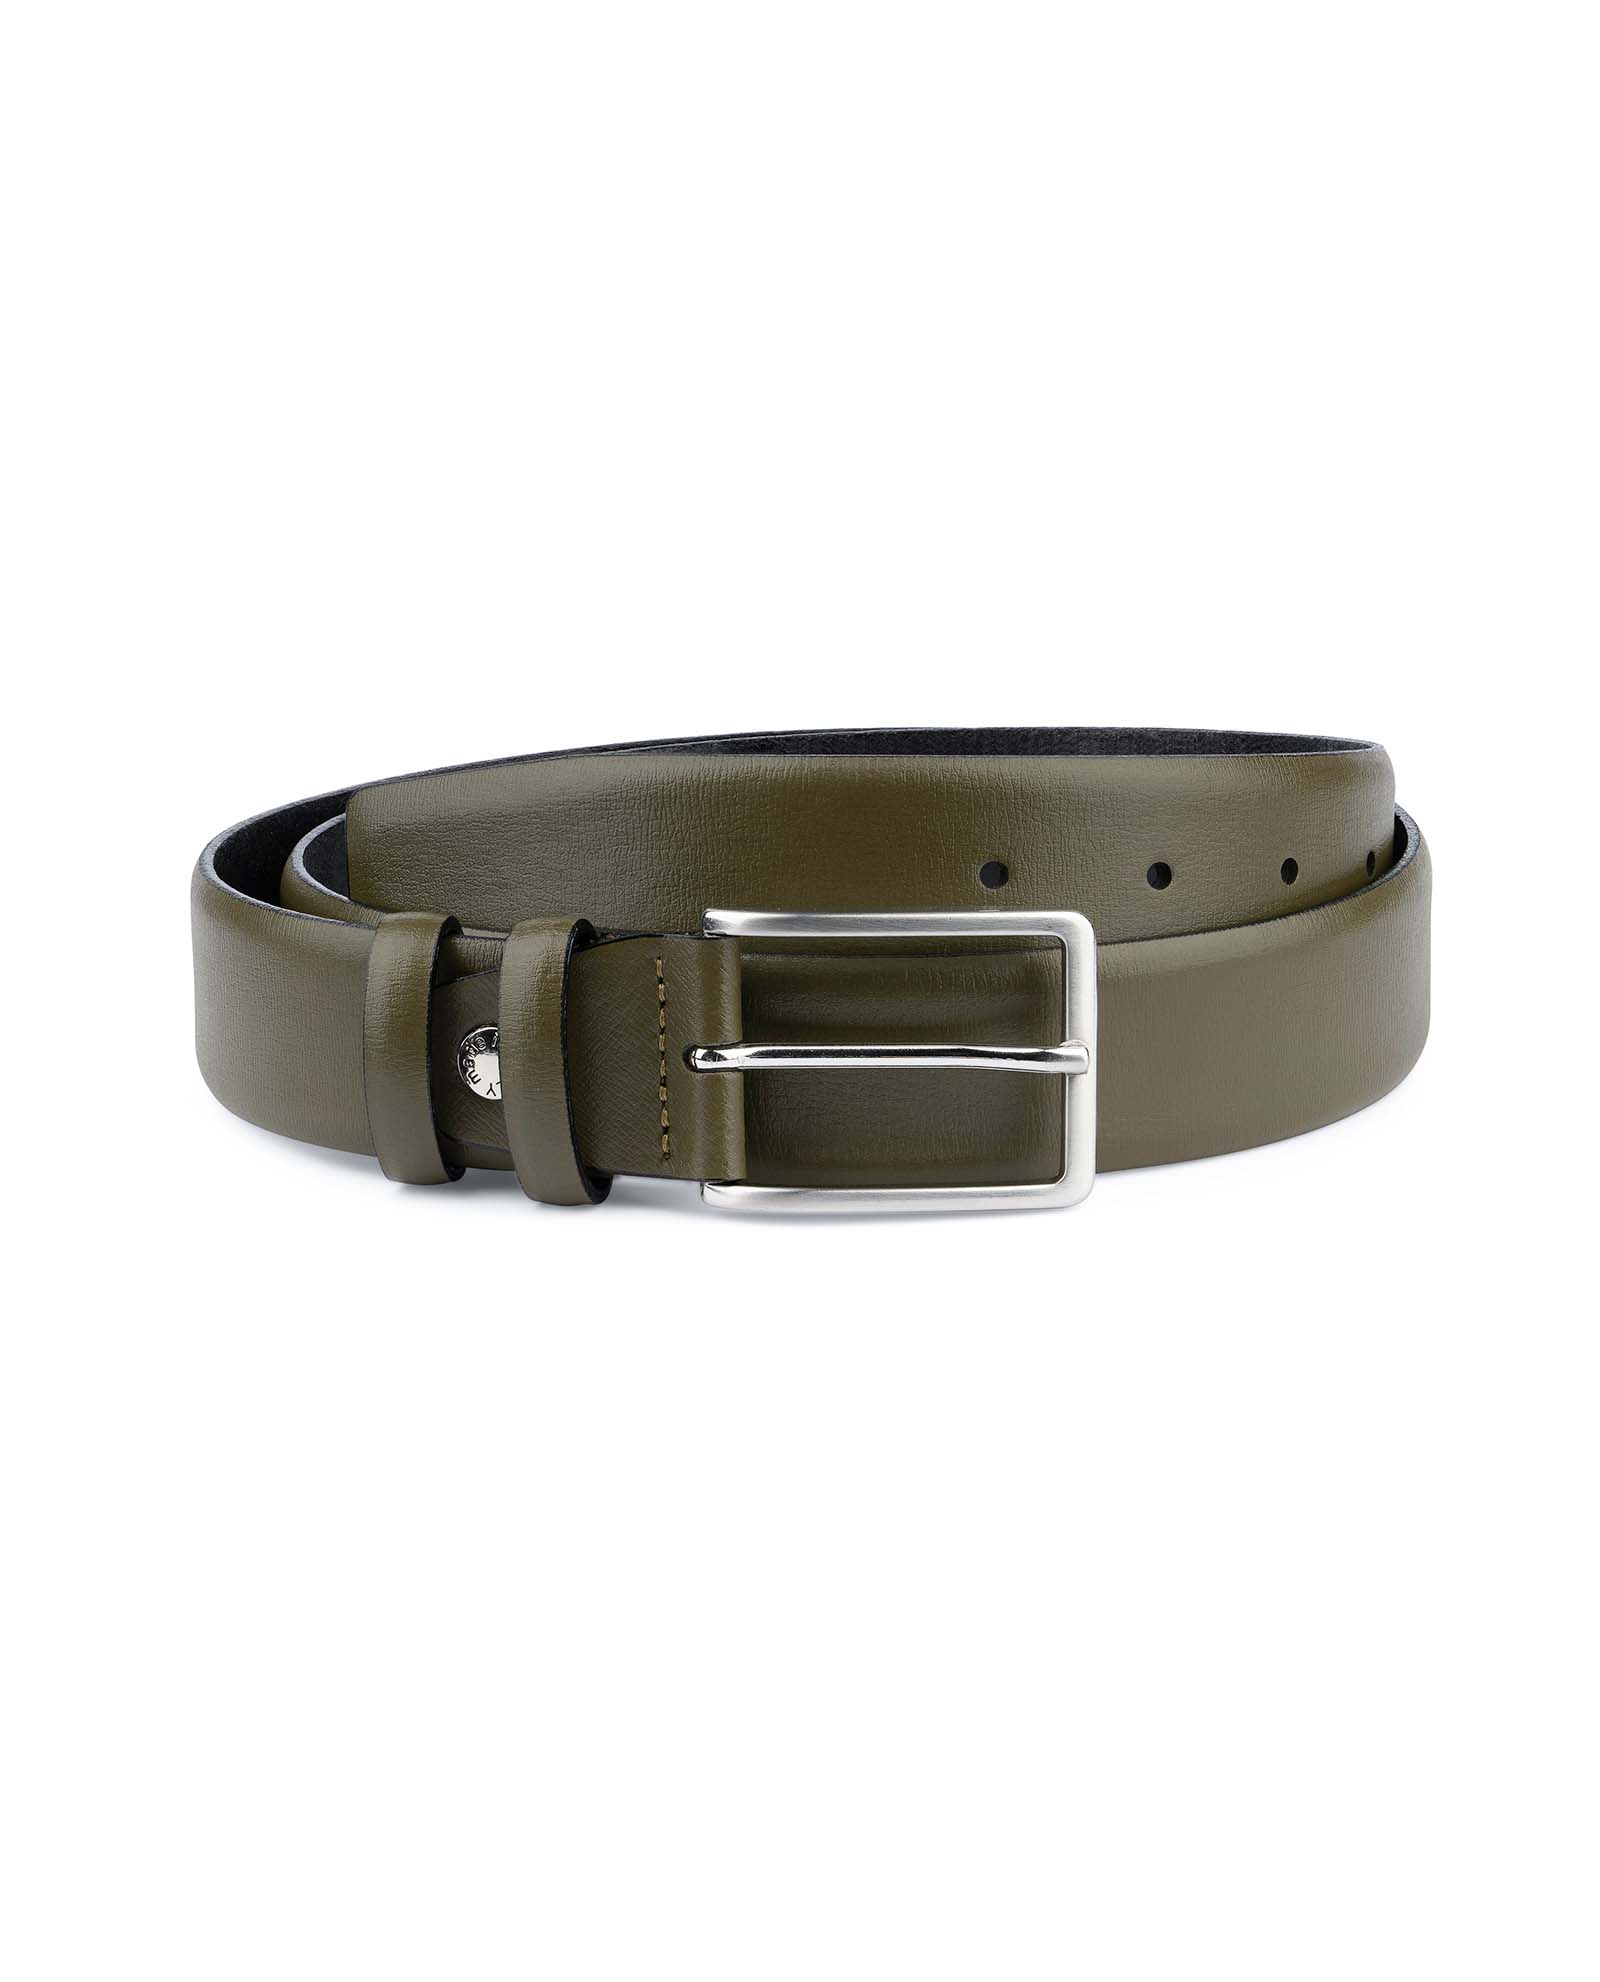 Buy Men's Green Belt | Olive Leather | LeatherBeltsOnline.com